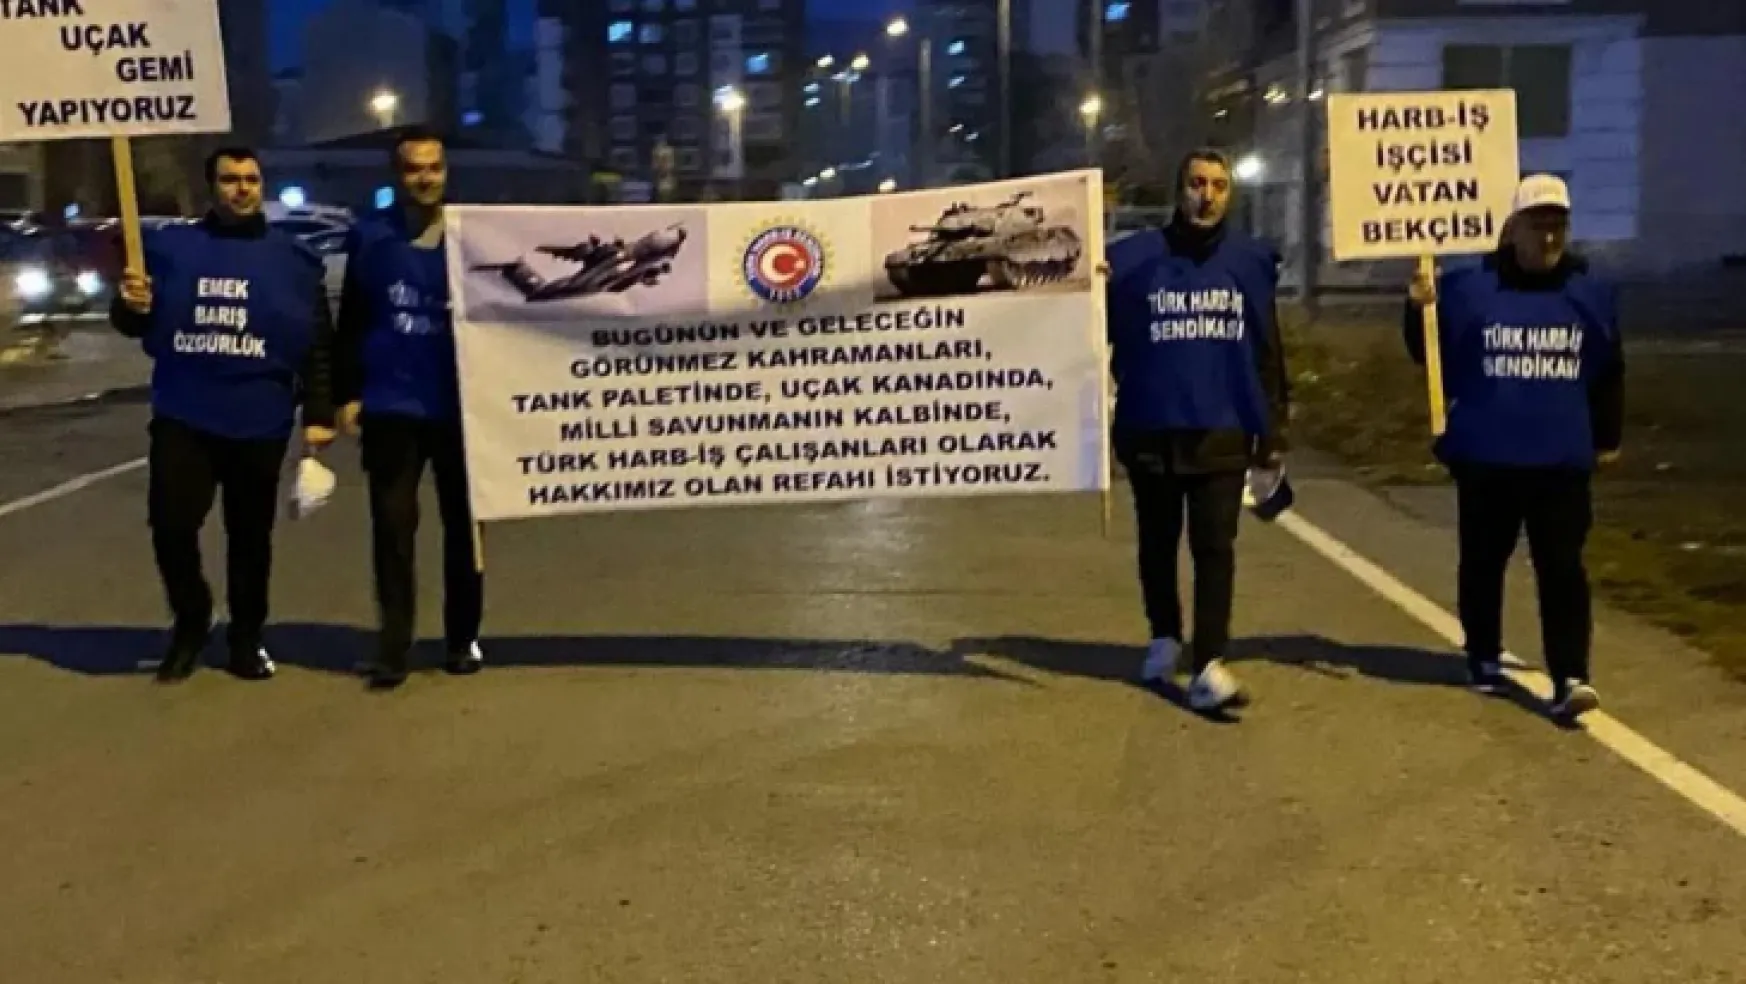 Türk Harb-İş Sendikası protesto amacıyla Ankara'ya yürüyor